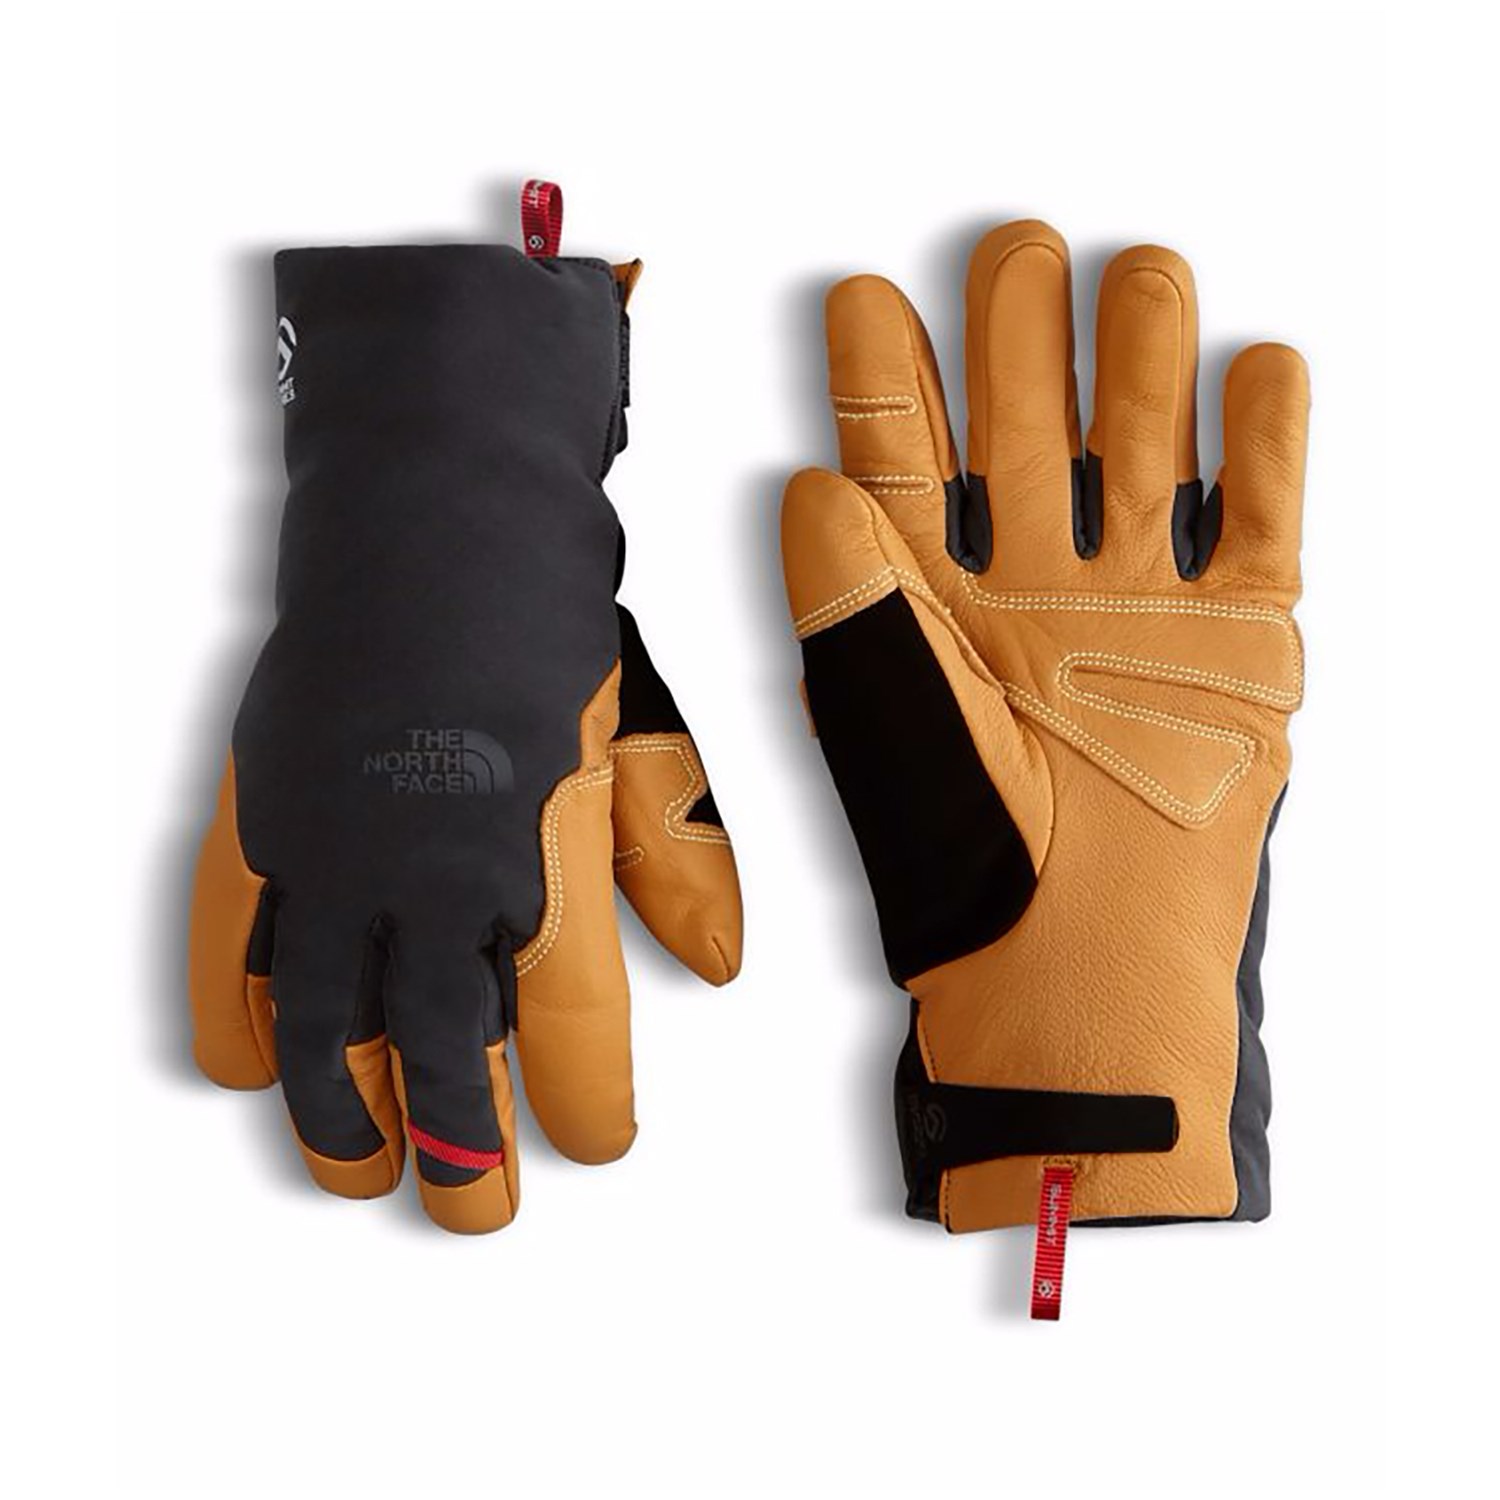 summit g3 insulated glove